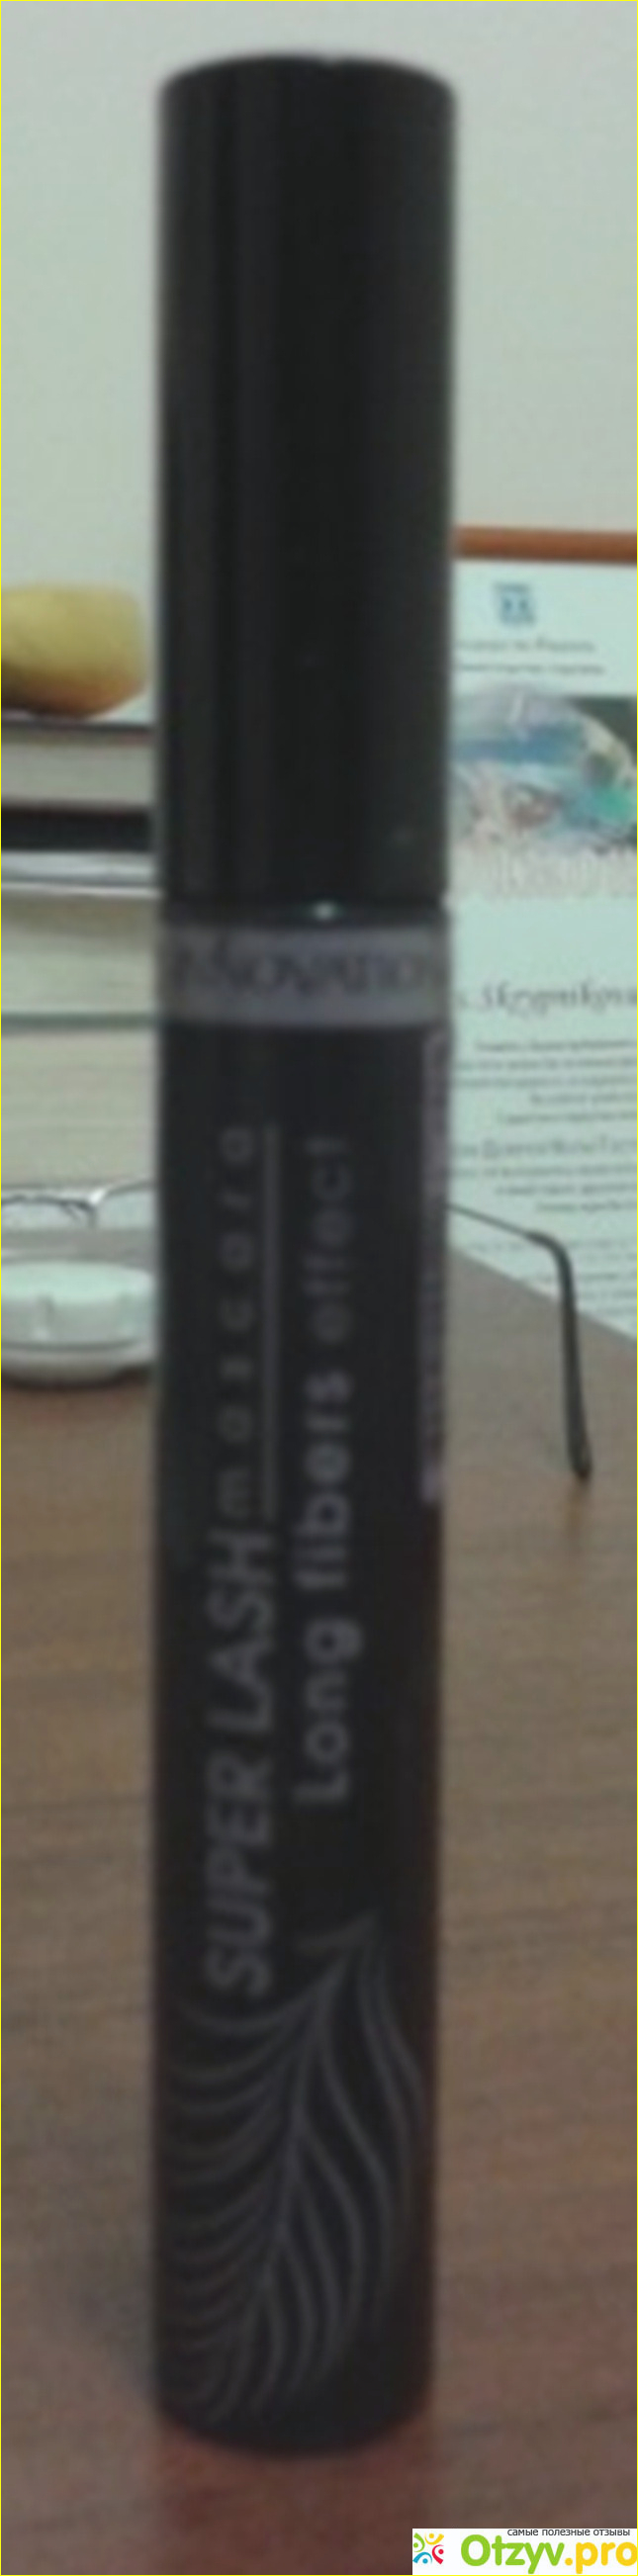 Отзыв о Тушь для ресниц Innovation Super Lash Mascara Long fibers effect 11,5 ml